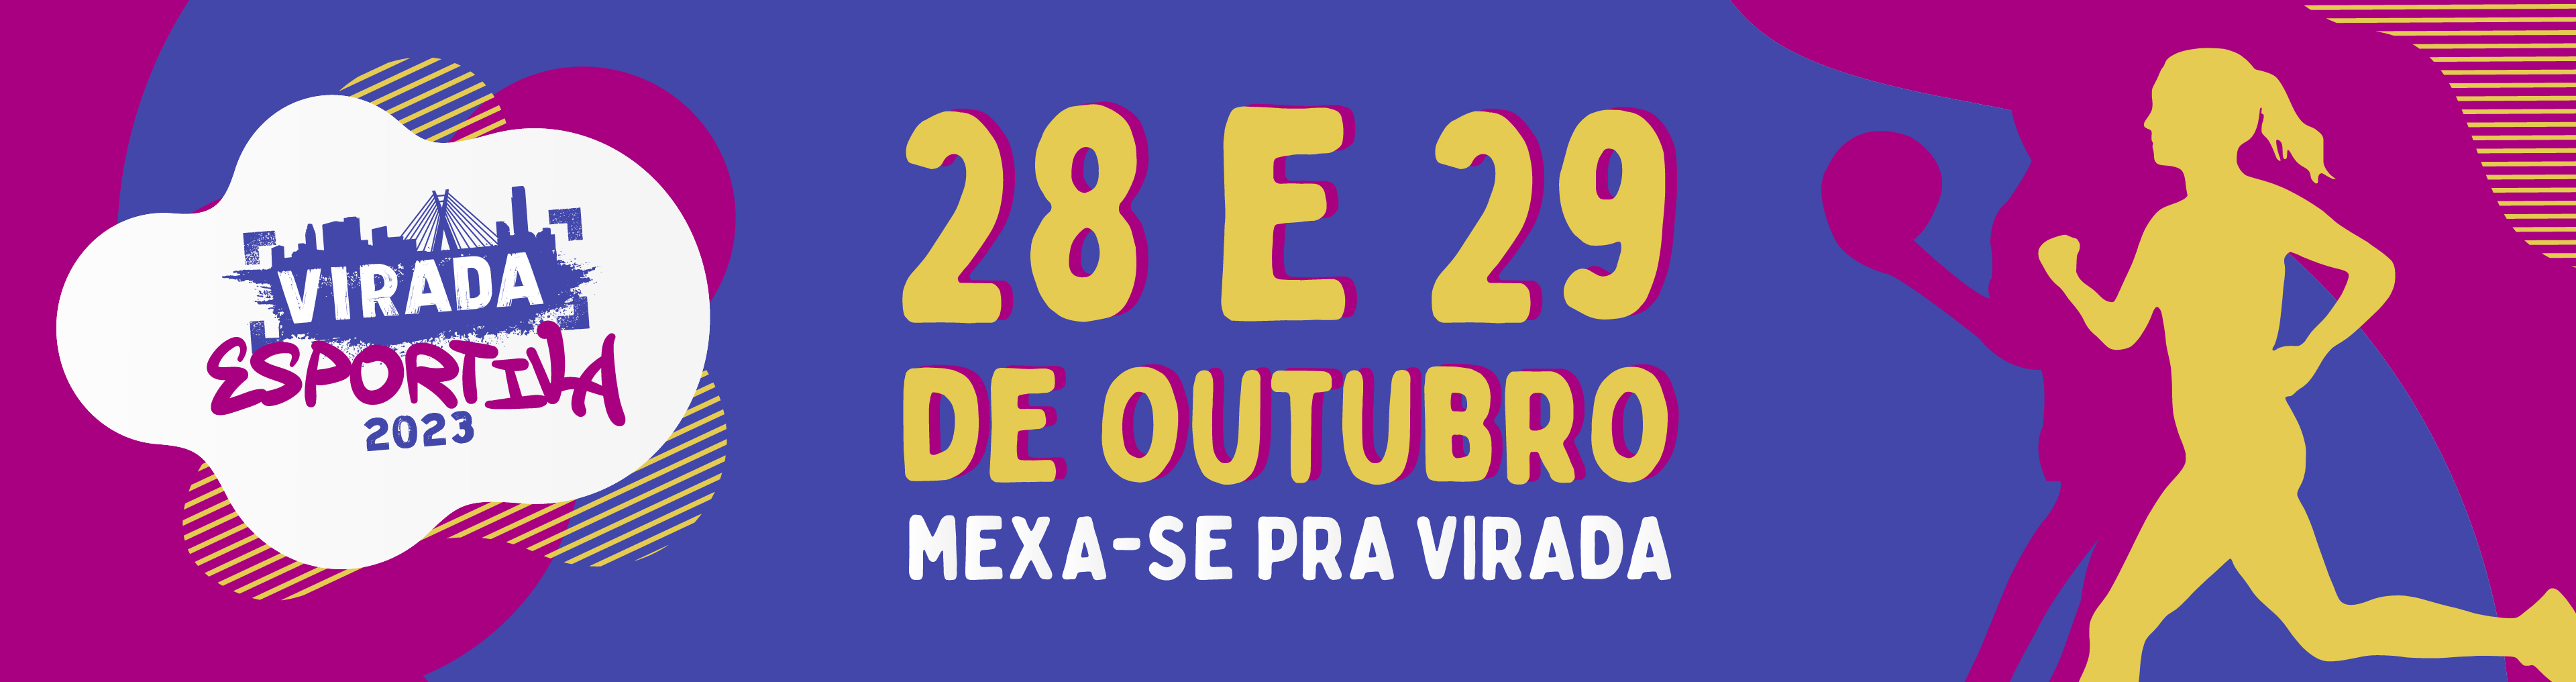 Arte gráfica com os dizeres "Virada Esportiva 2023 - 28 e 29 de outubro, mexa-e pra Virada"